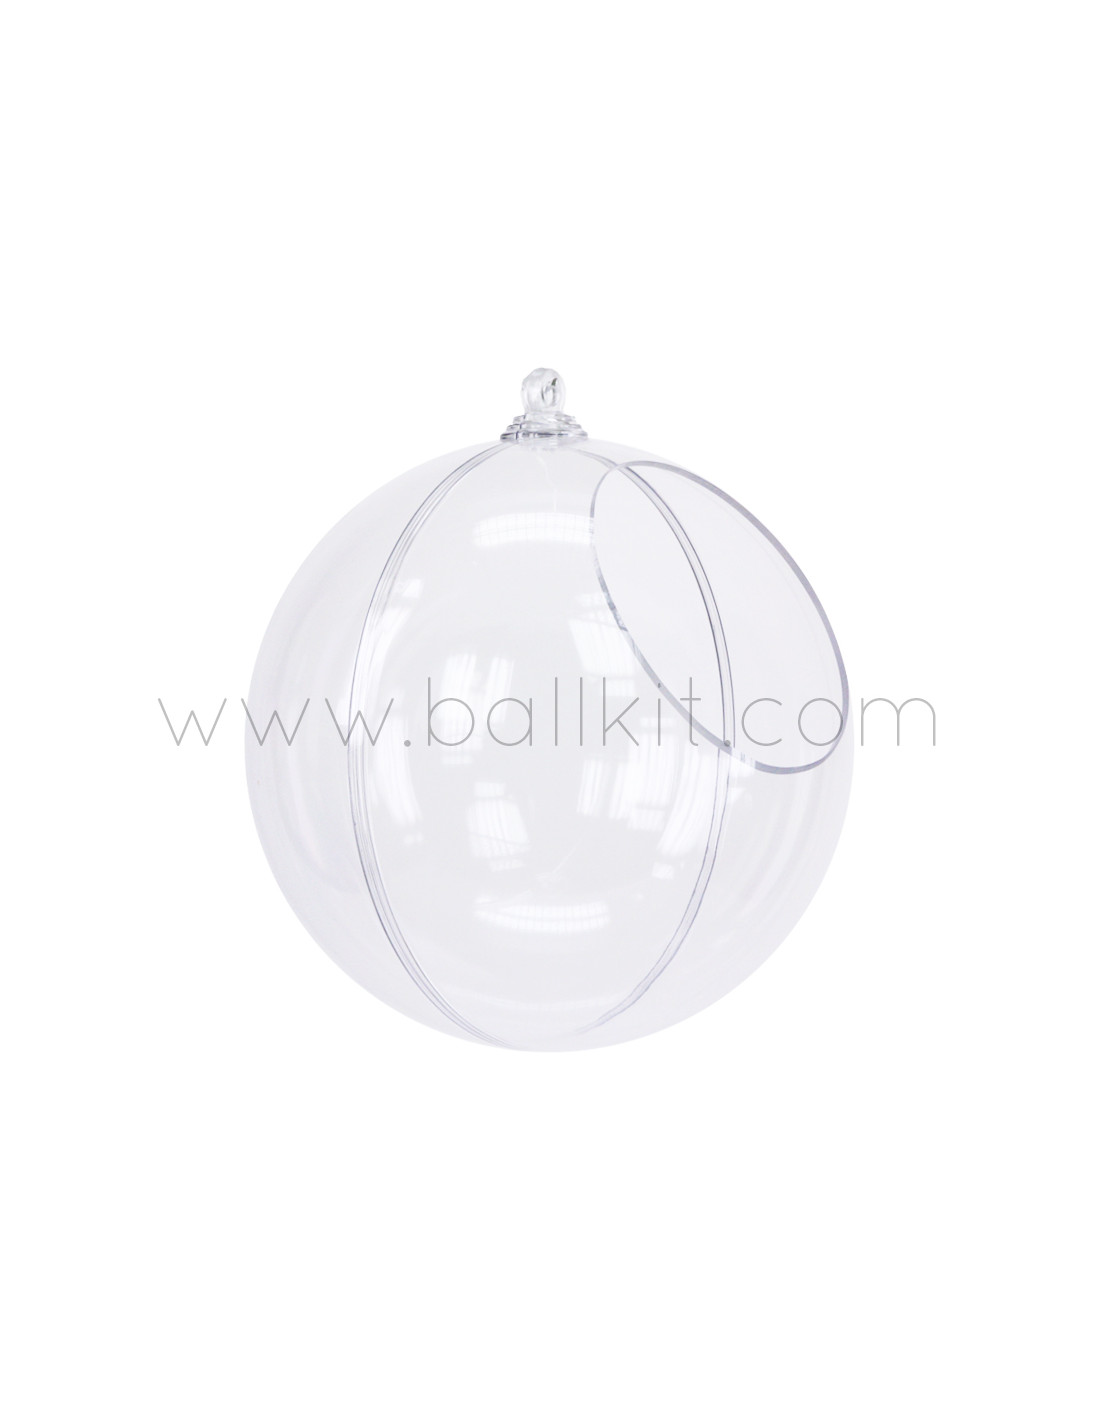 MAZE MA 20 mm Lámpara de cristal transparente con forma de bola para colgar